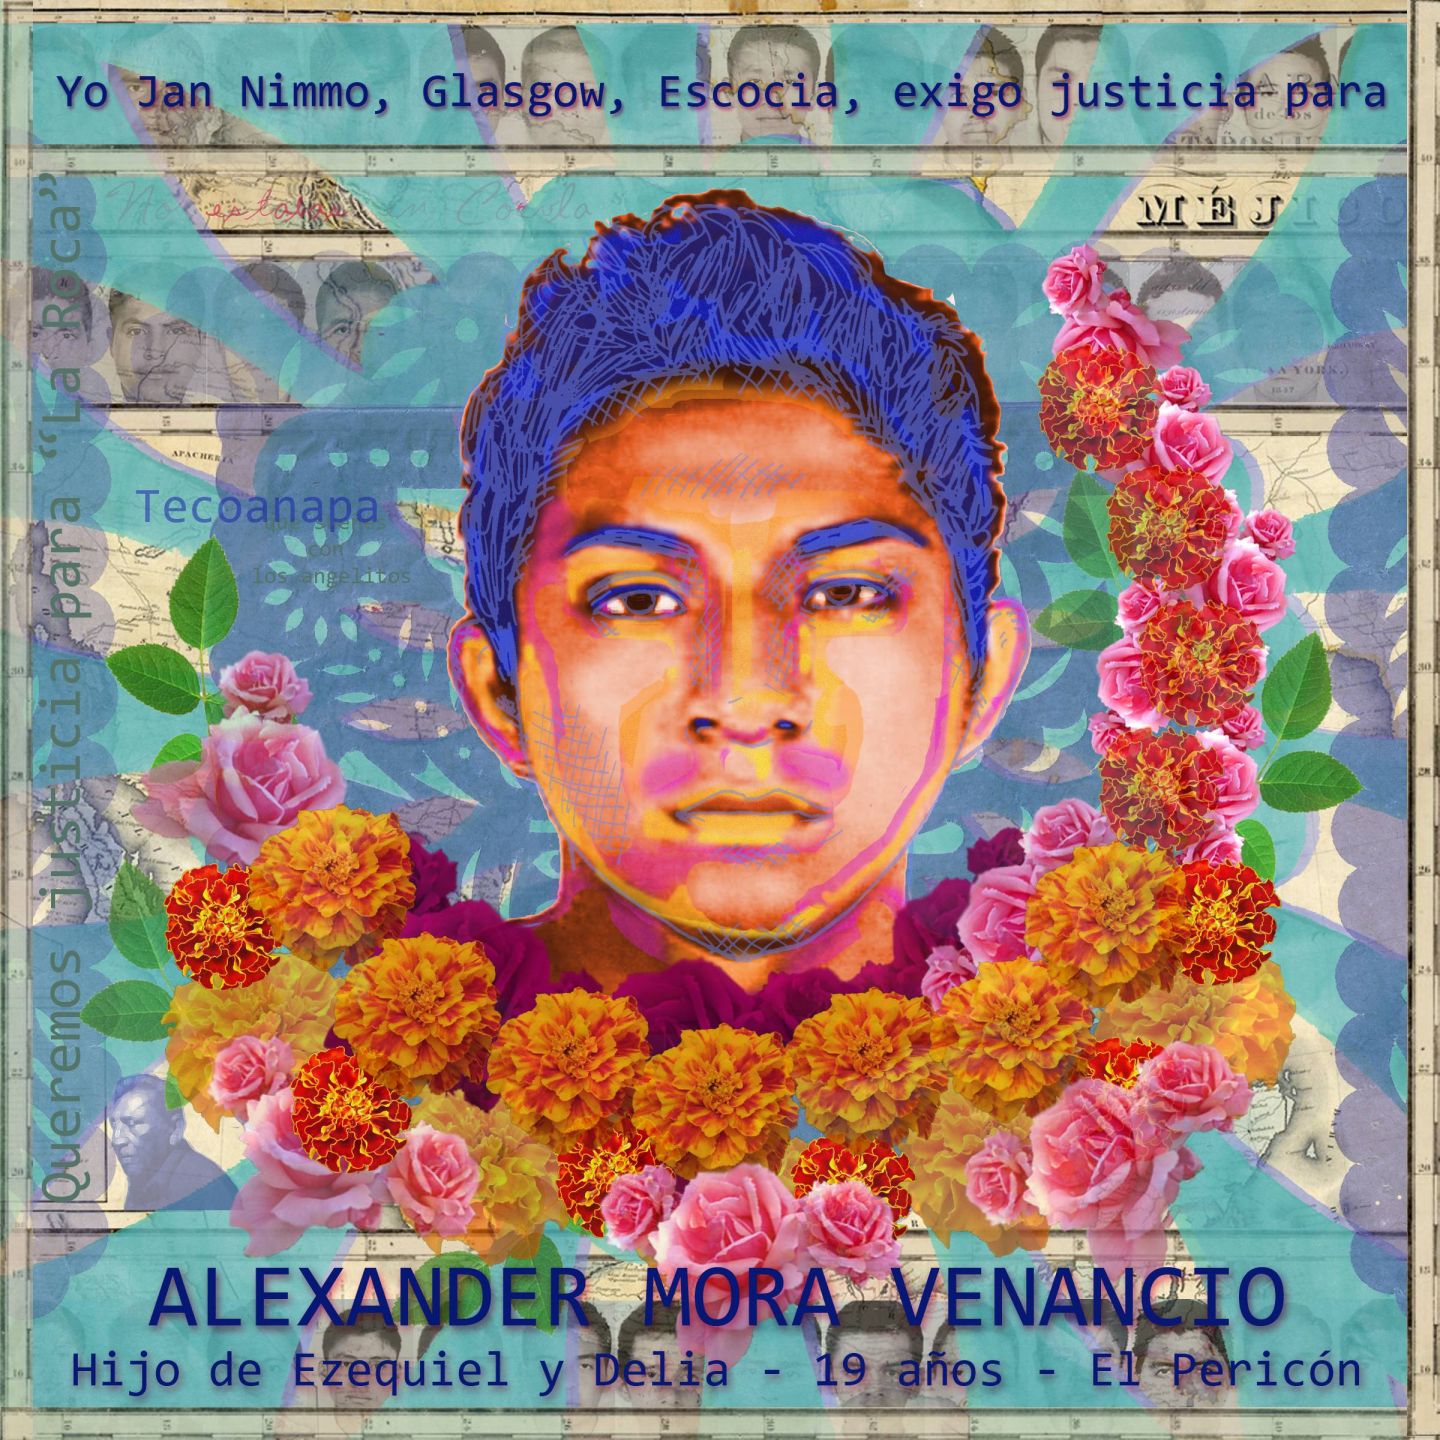 Portrait of Alexander Mora Venancio by Jan Nimo